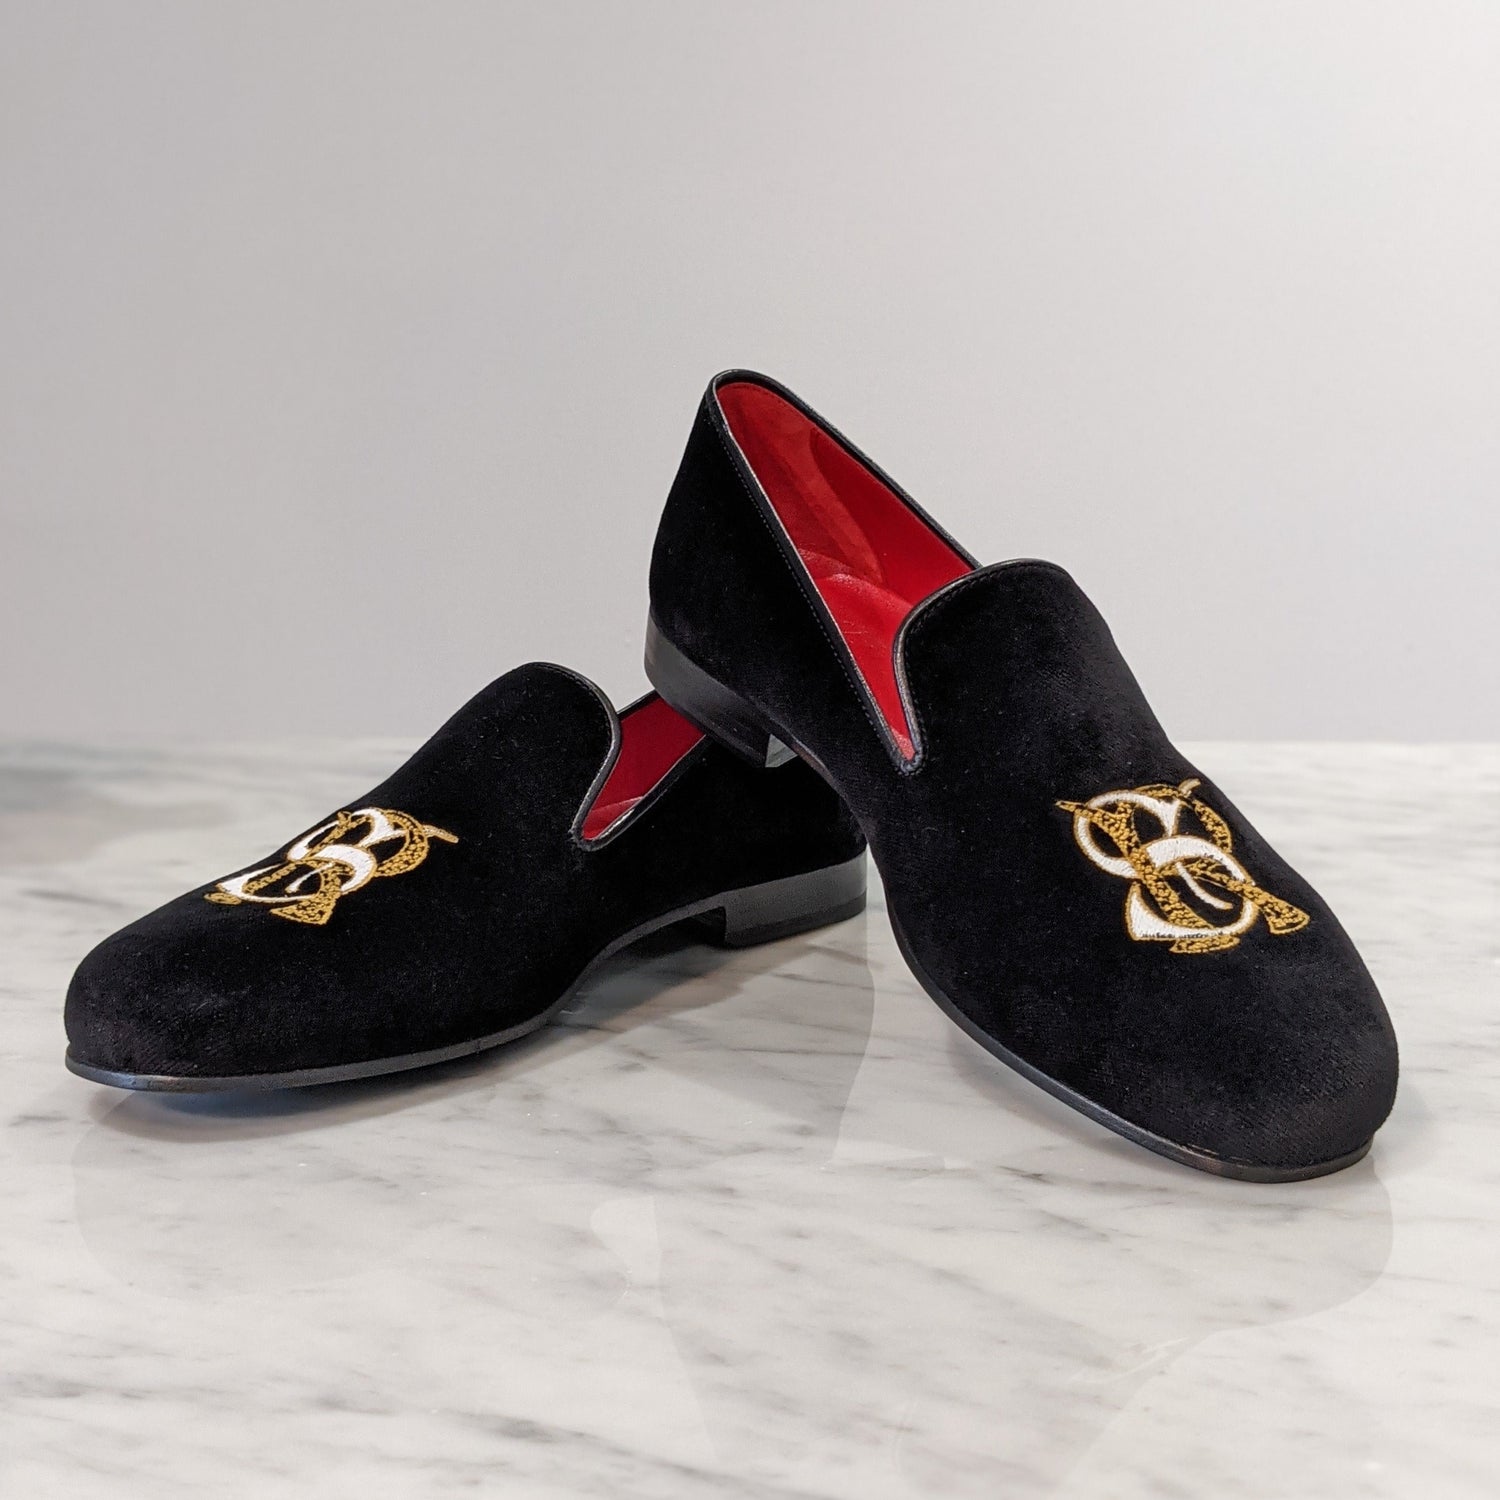 Black velvet slipper wedding shoe dress loafer custom made